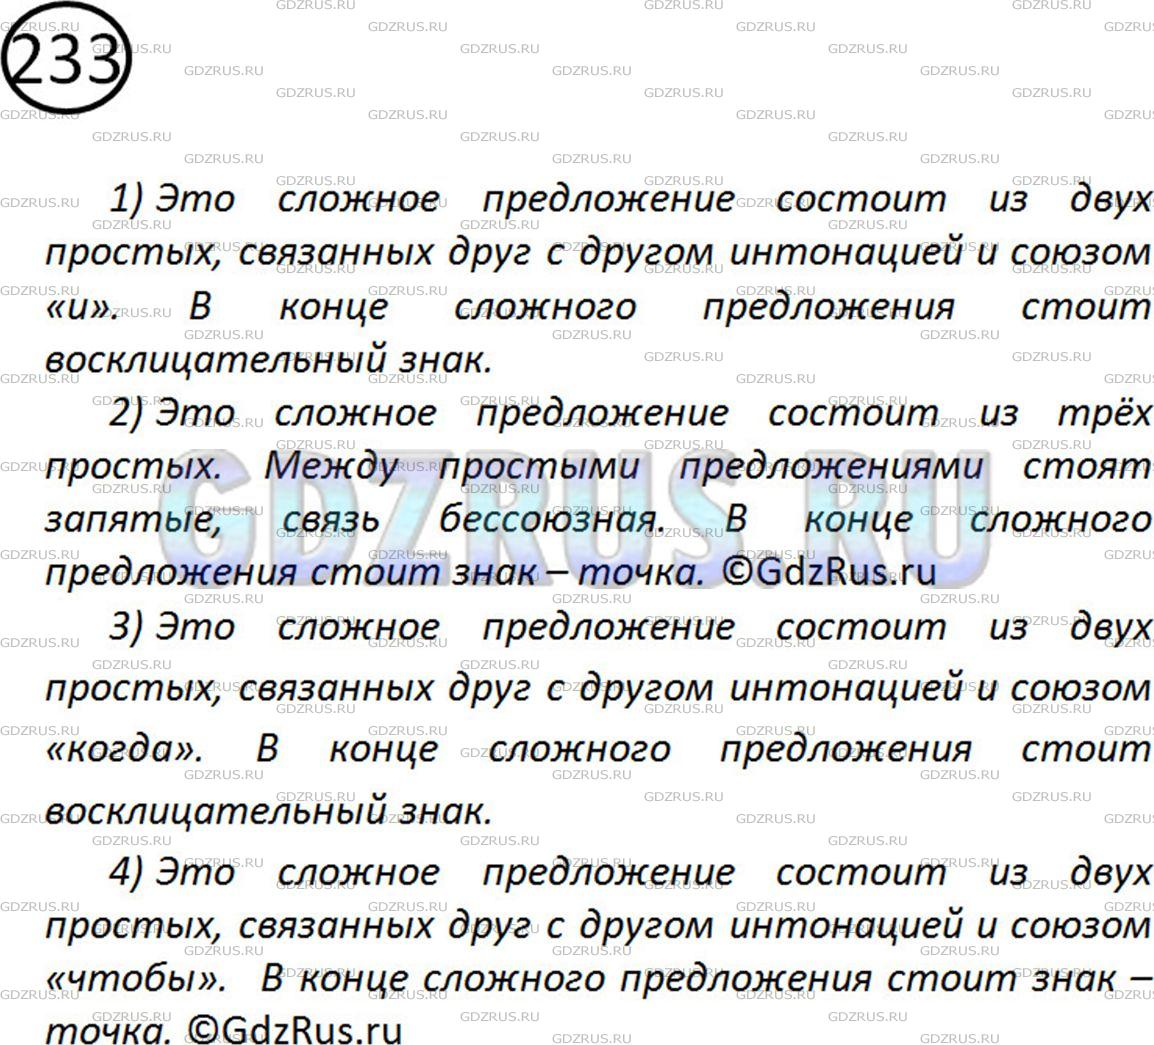 Фото картинка ответа 2: Упражнение № 233 из ГДЗ по Русскому языку 5 класс: Ладыженская